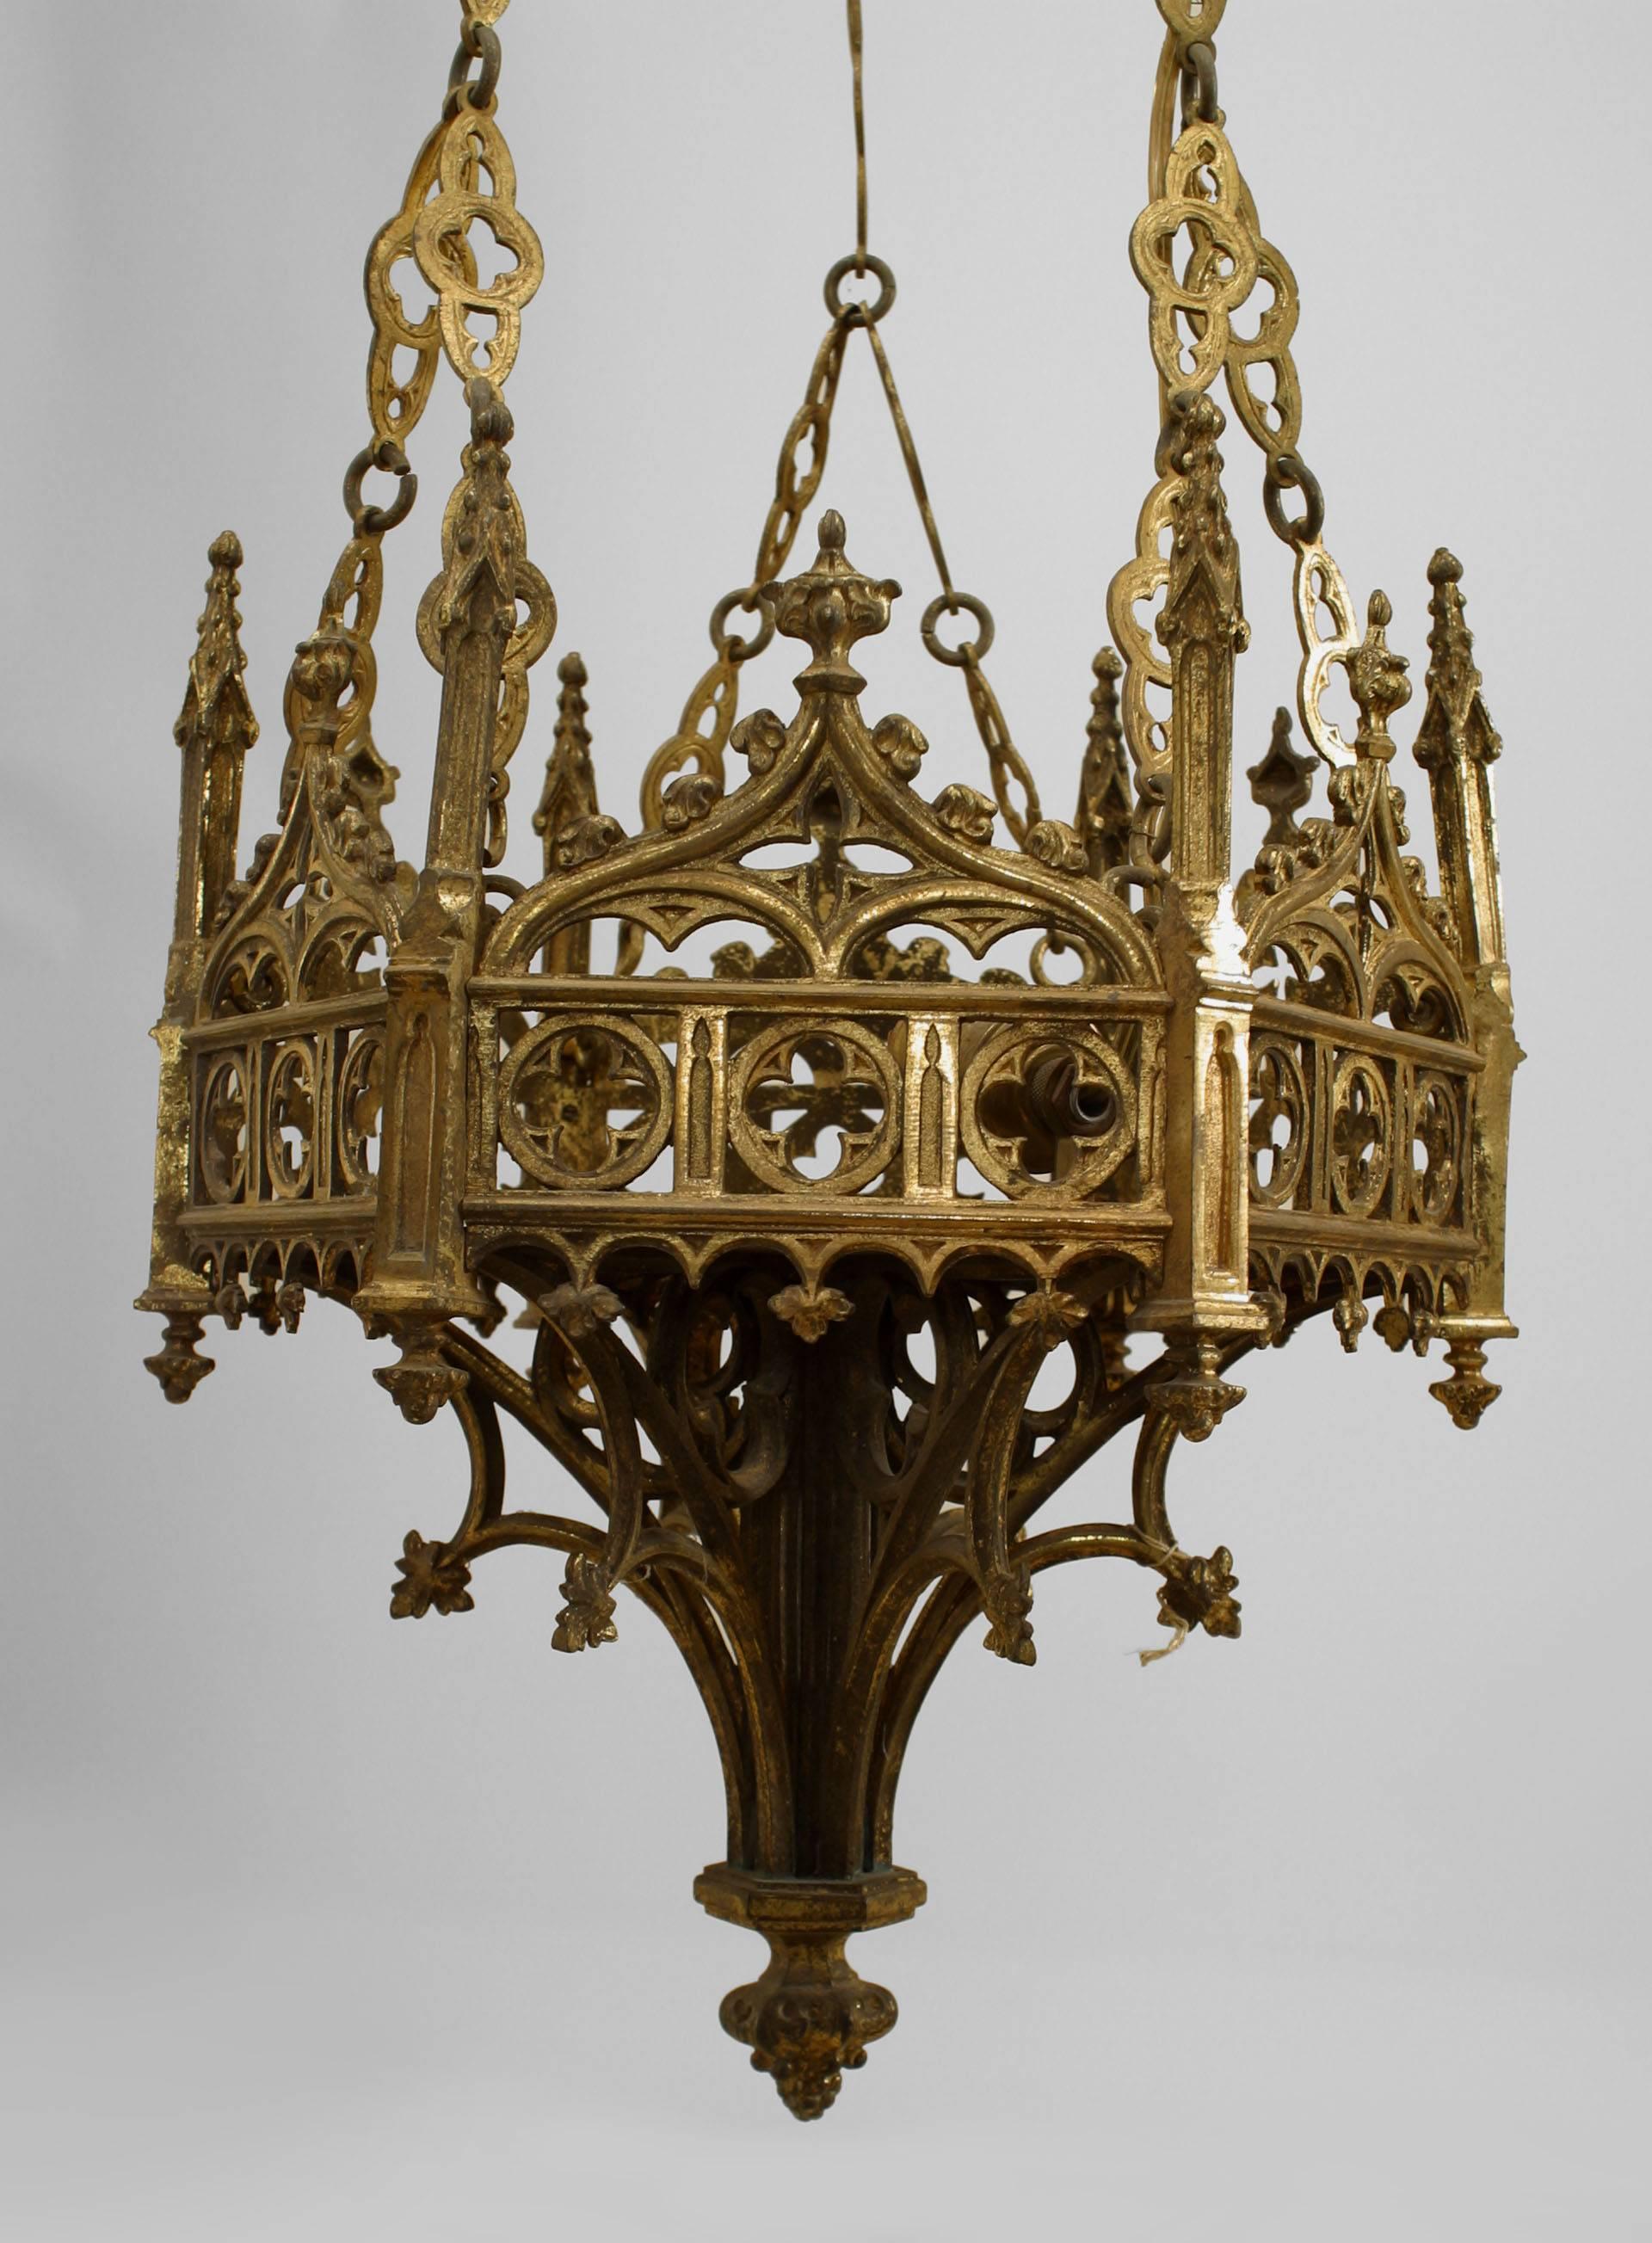 2 luminaires de sanctuaire de style néo-gothique anglais (19e siècle) en bronze doré à 6 côtés filigranes. (PRIX PAR PIÈCE)
